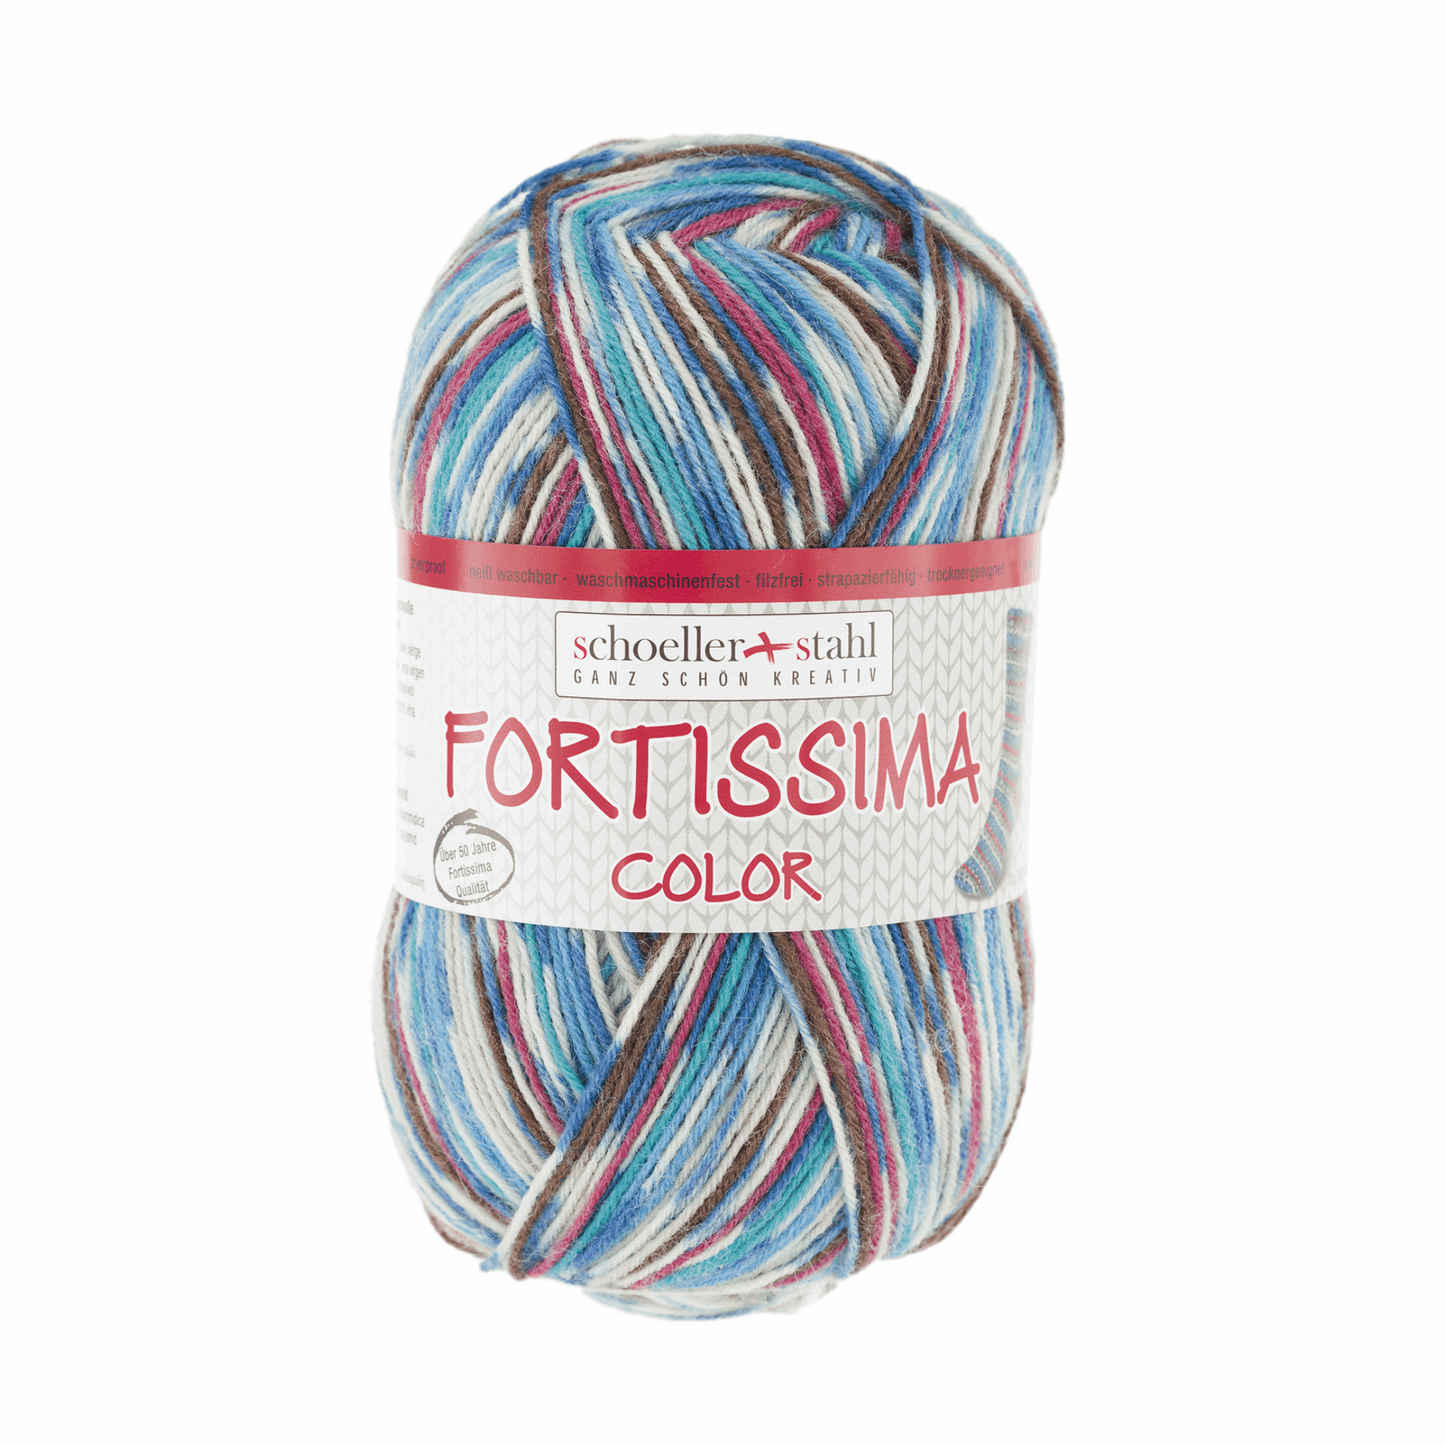 Fortissima socka 4fädrig color, 90028, Farbe 2492, club